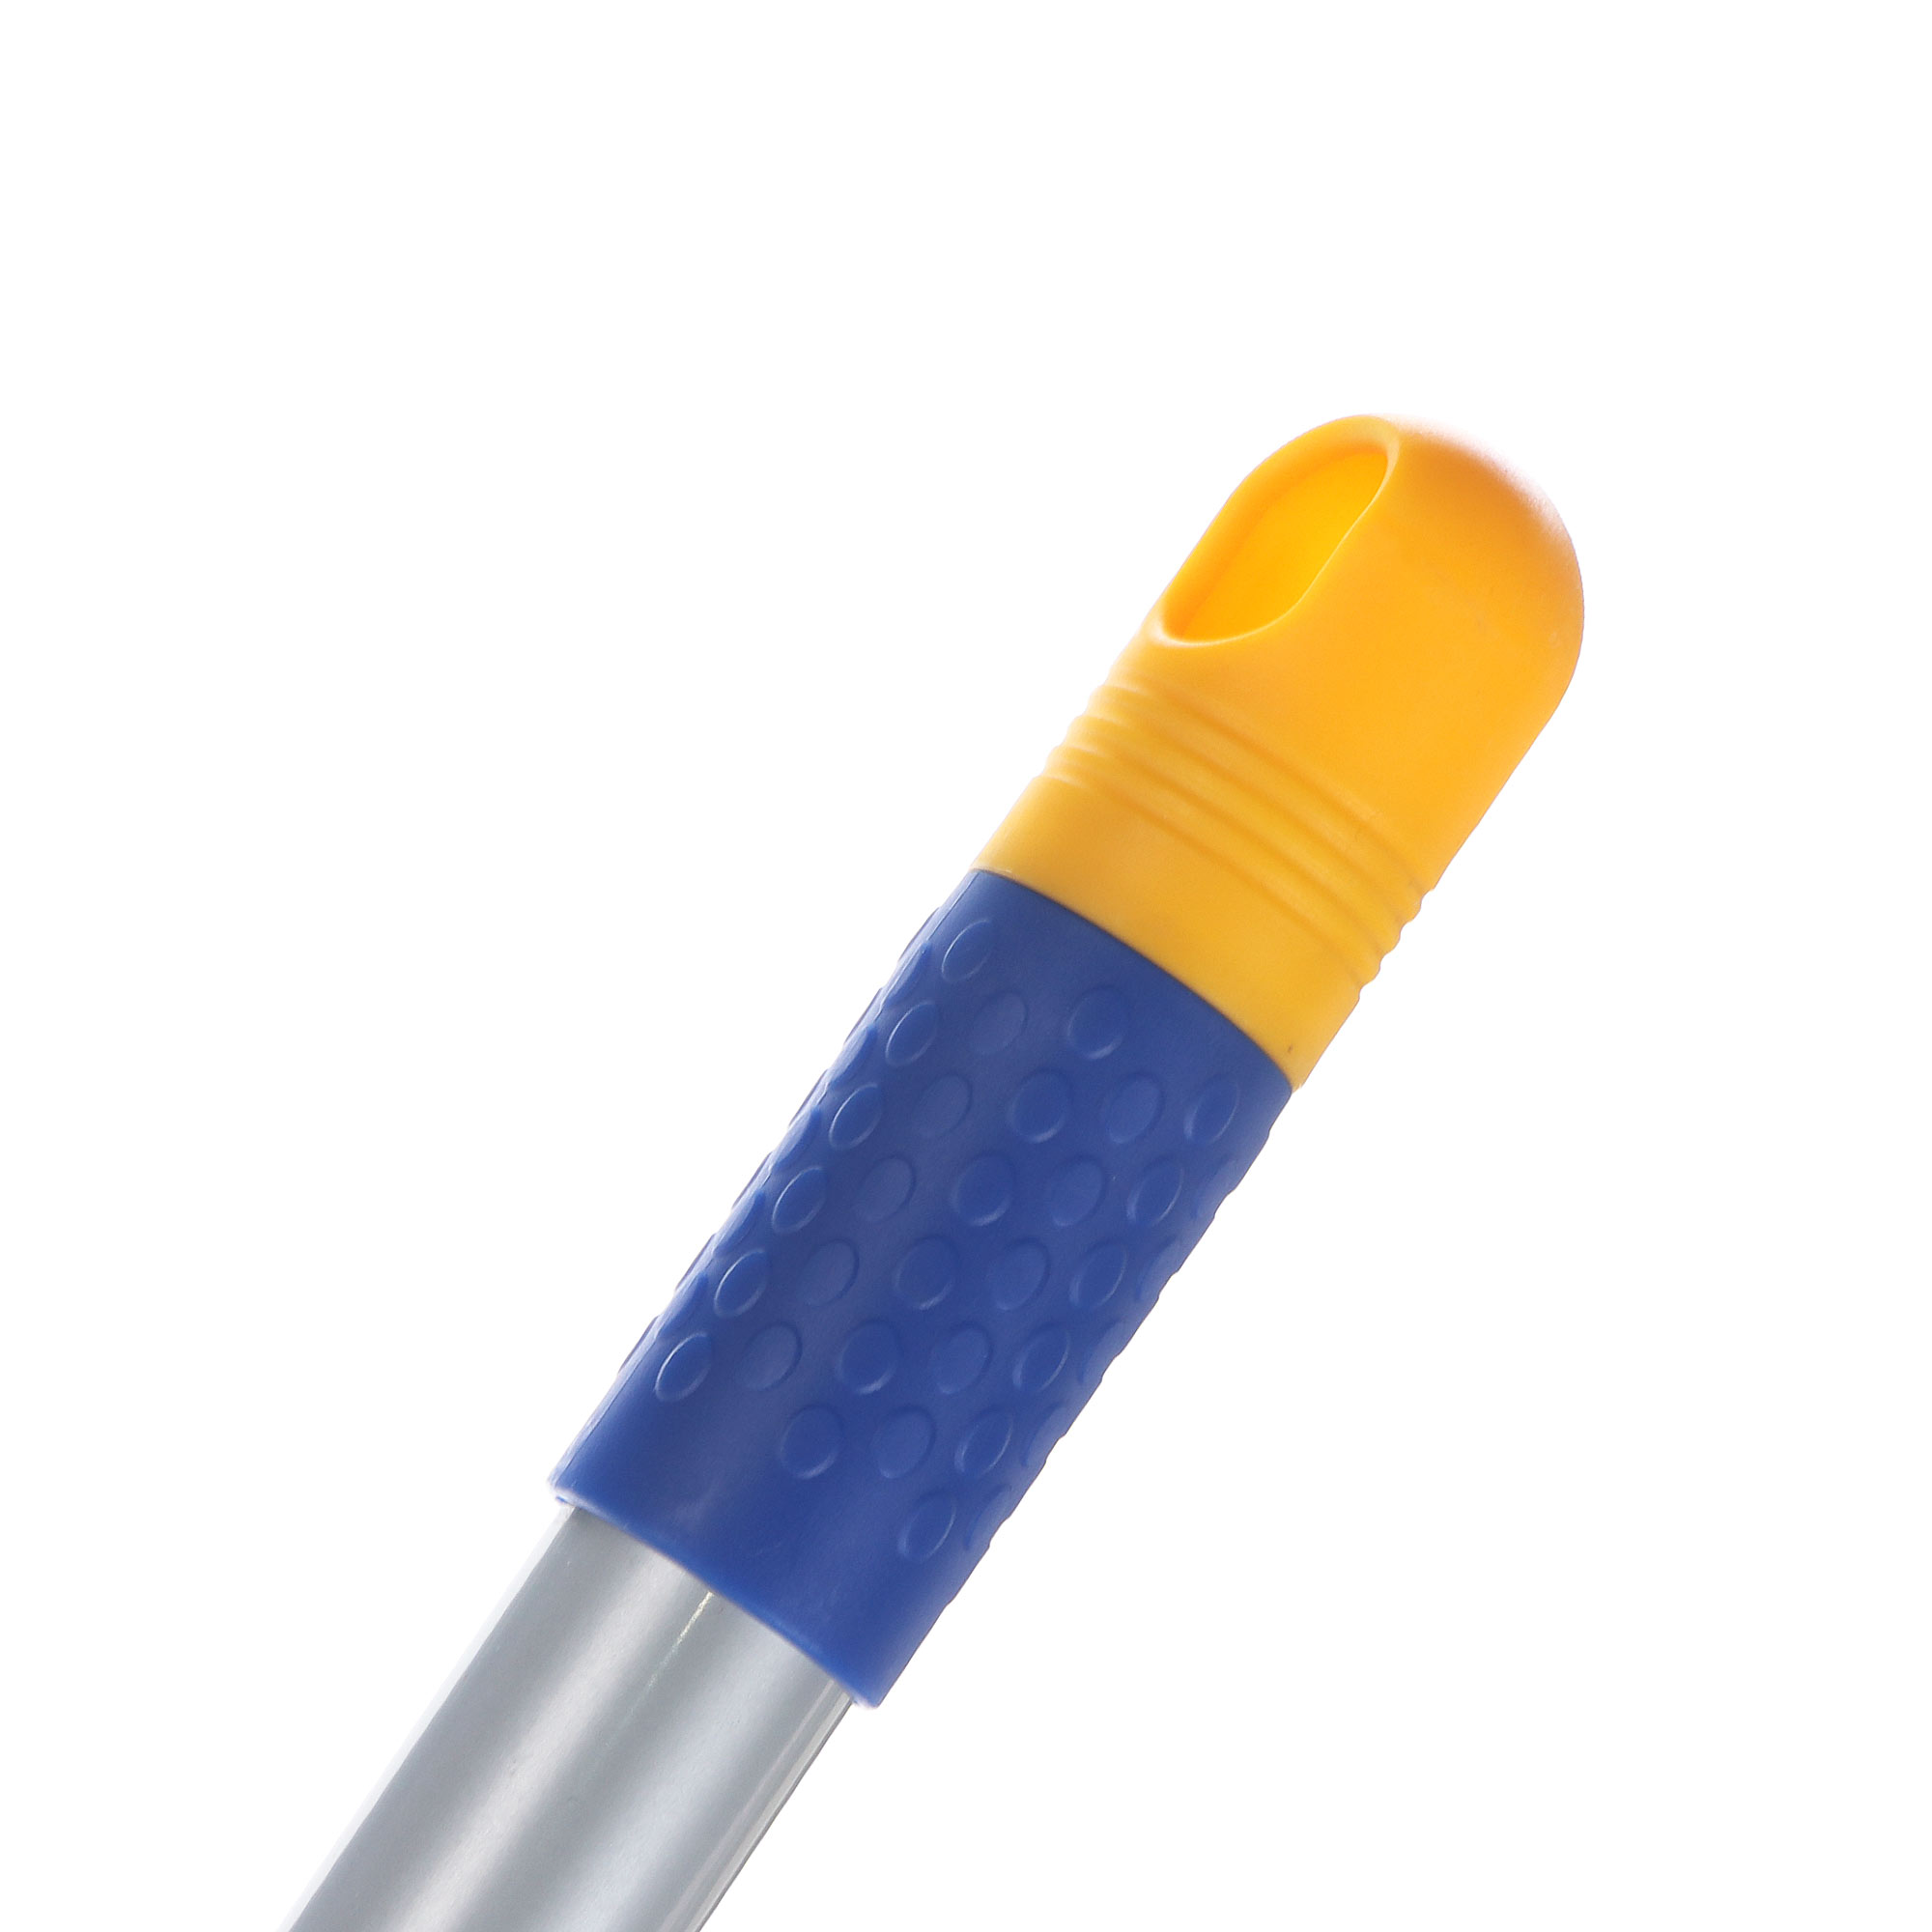 Швабра Neco 40см с телескопической ручкой (101-155)x14.5x5.5cm, с 2шт микрофибры - фото 4